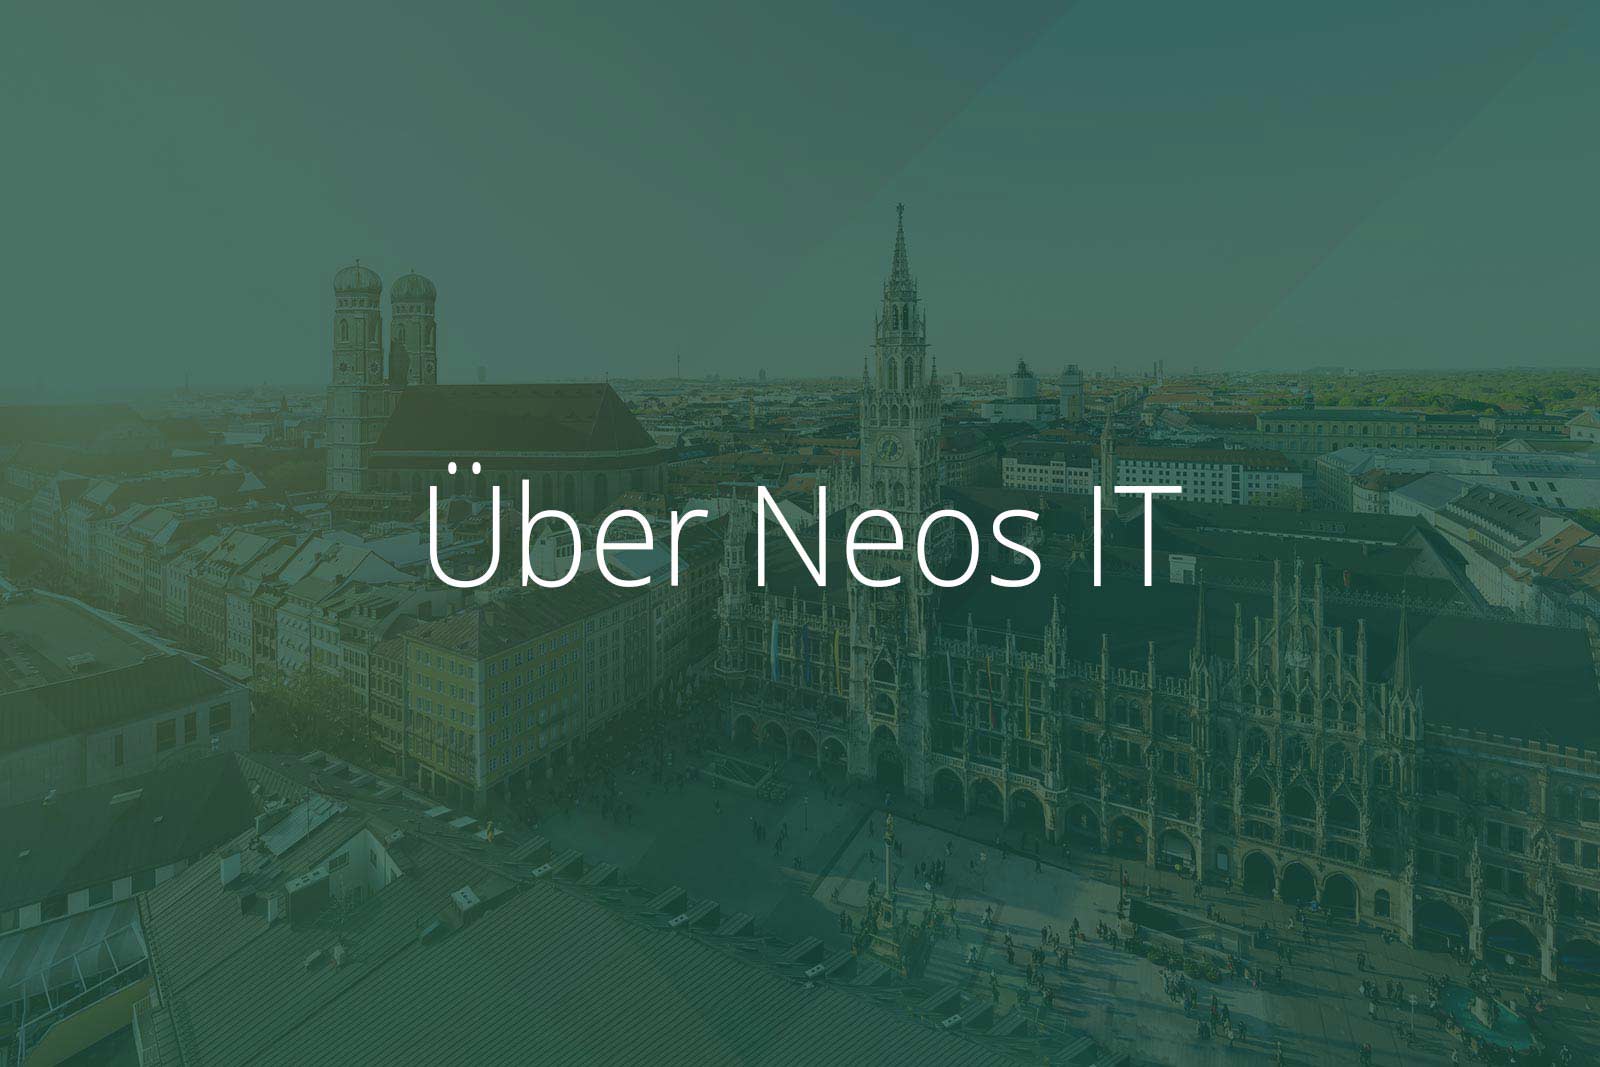 Über Neos IT Services, Abbildung München